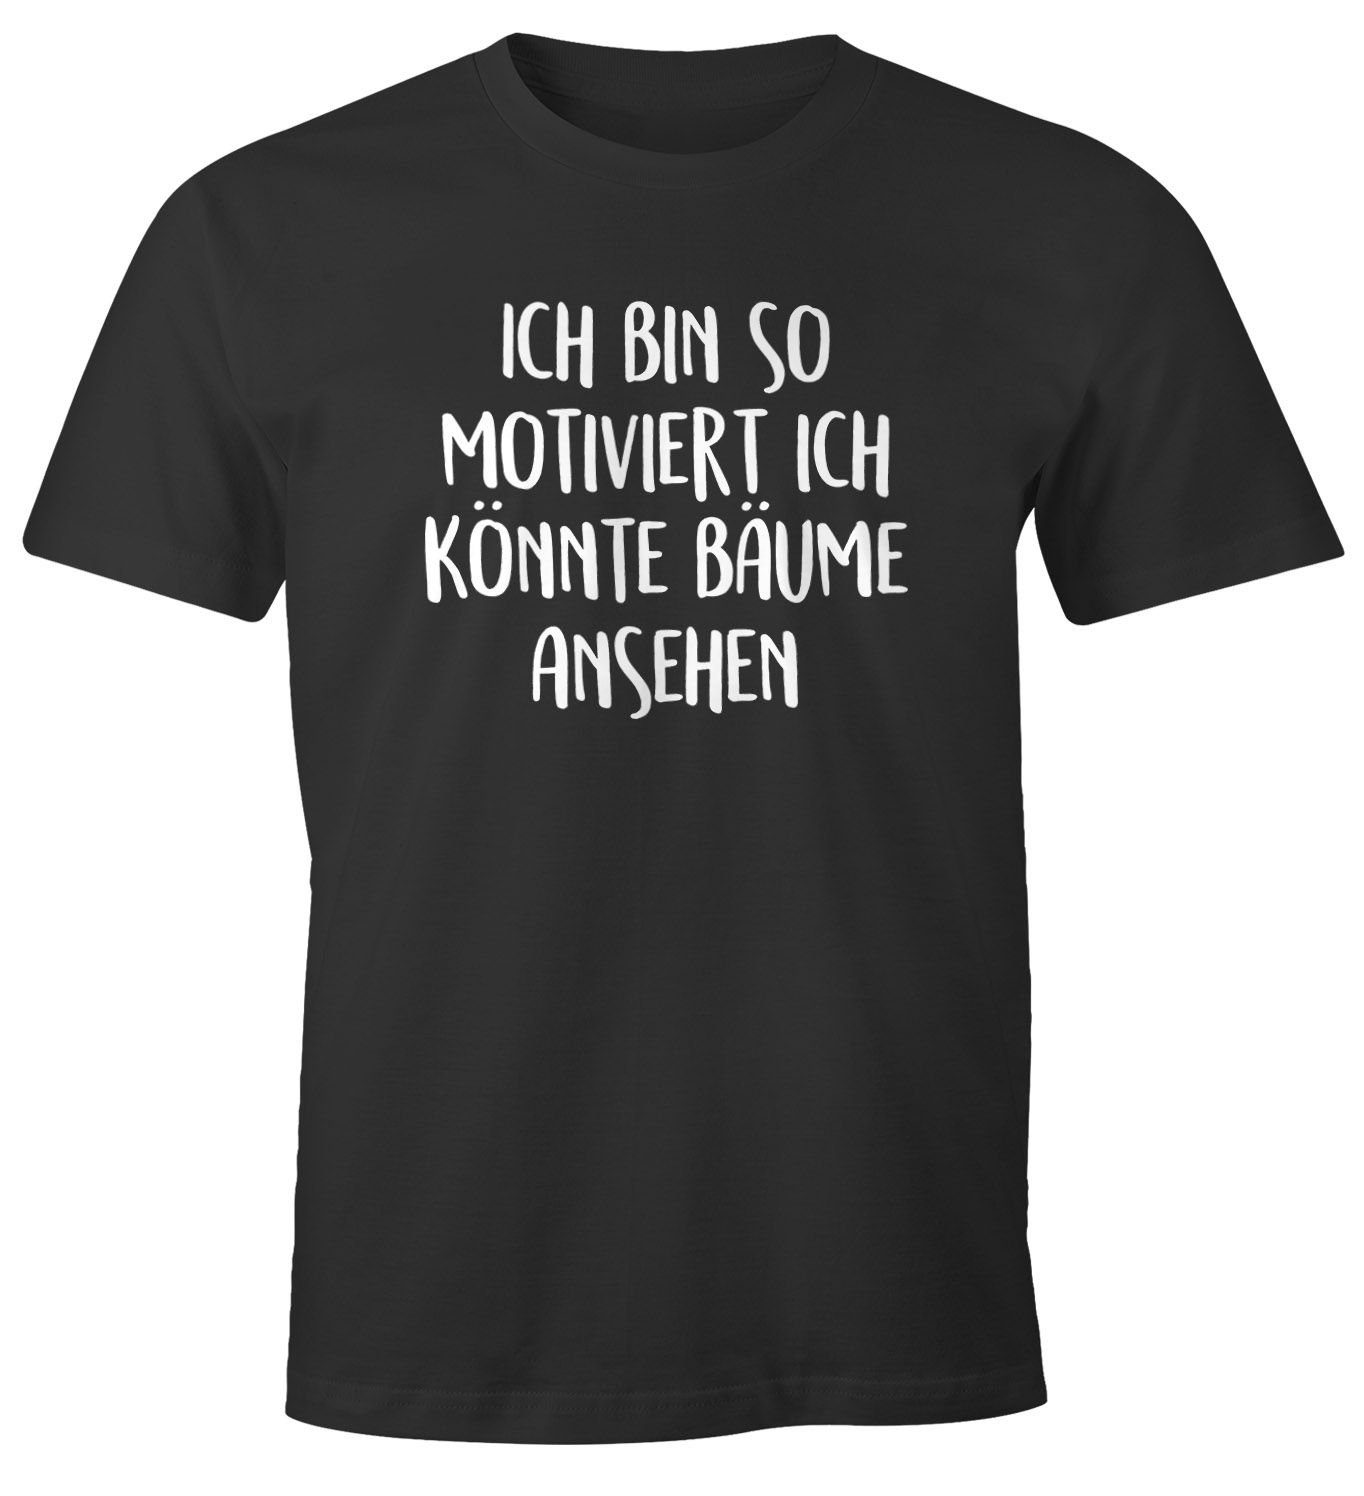 Bäume Herren Ich bin ansehen könnte T-Shirt mit Fun-Shirt Print-Shirt schwarz Spruch lustig so MoonWorks motiviert ich Moonworks® Print